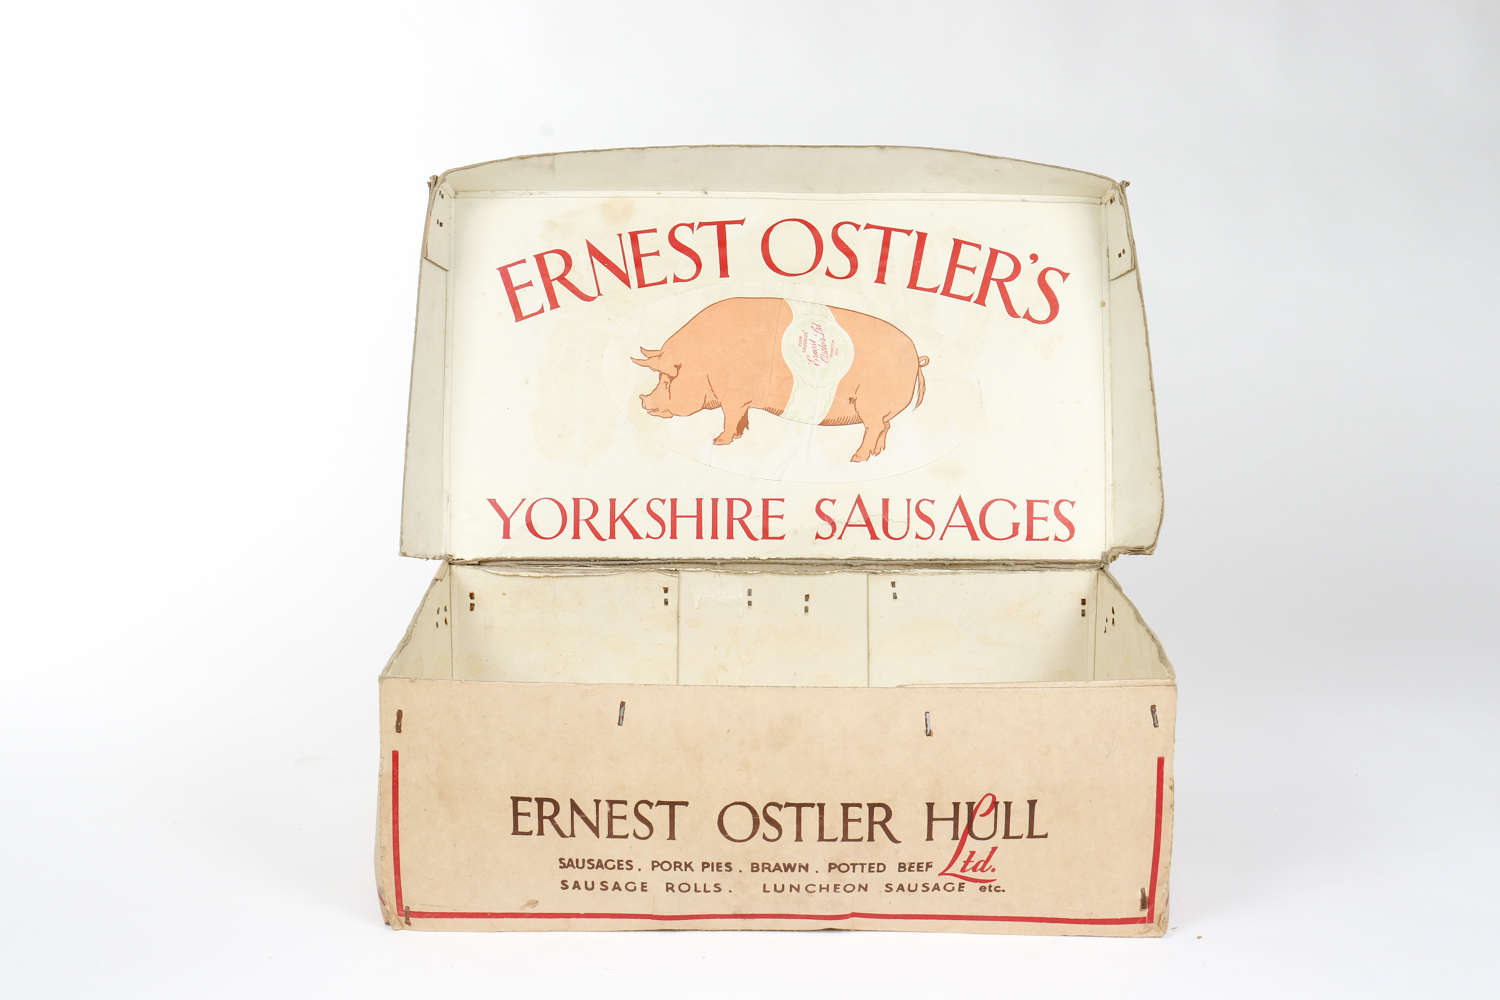 Ernest Ostler's Yorkshire Sausages shop delivery or display box